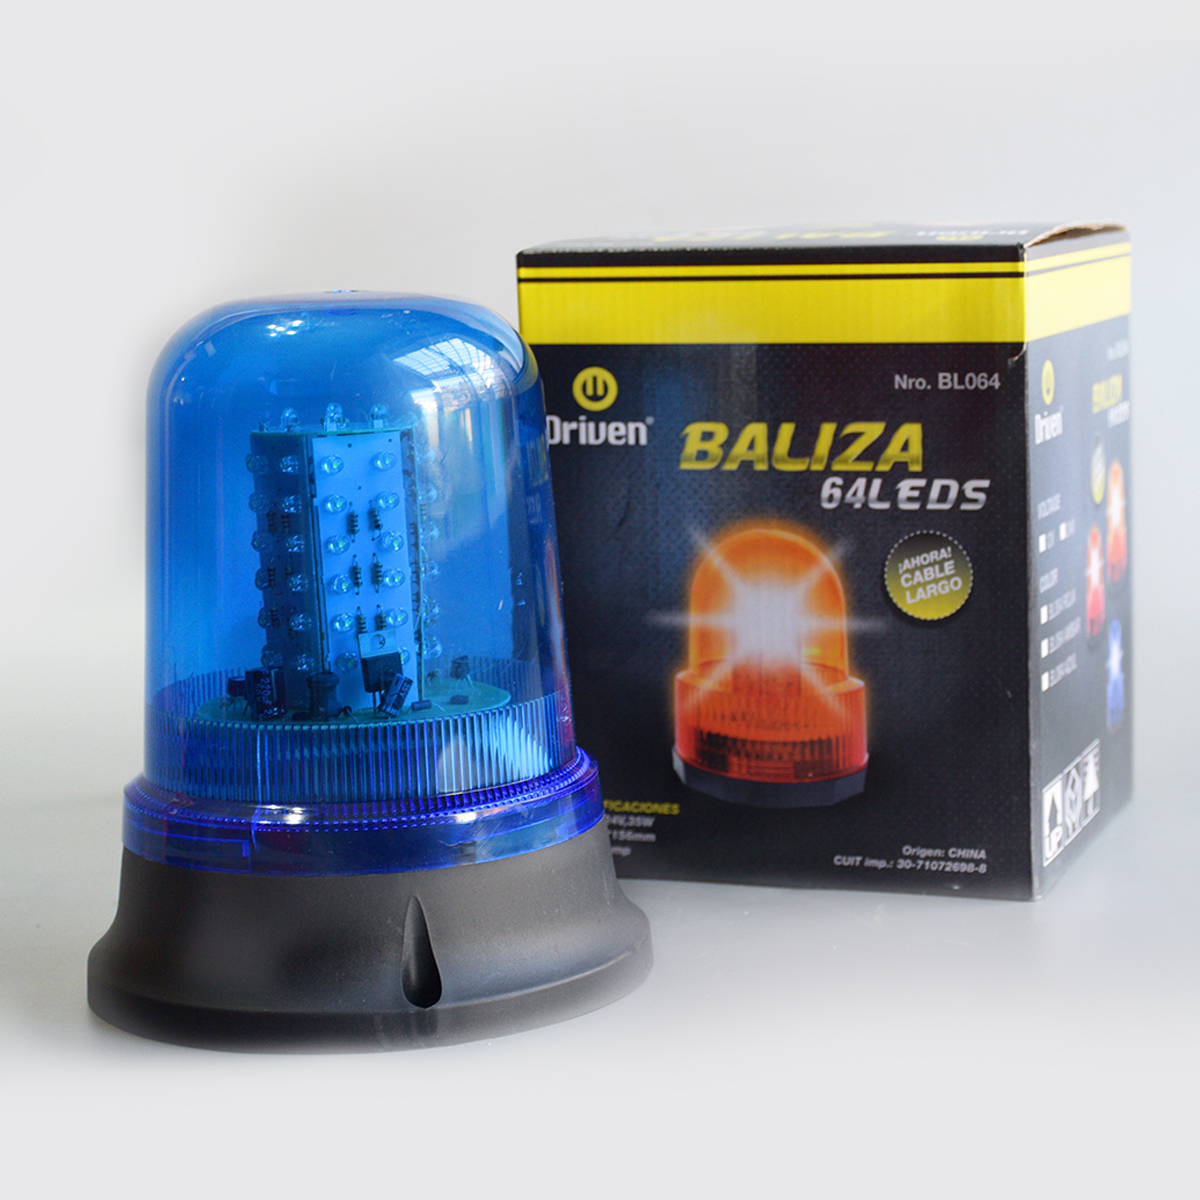 BL064-AMB BALIZA 64 LEDS MULTIVOLTAJE 12 Y 24 VOLTS - DRIVEN